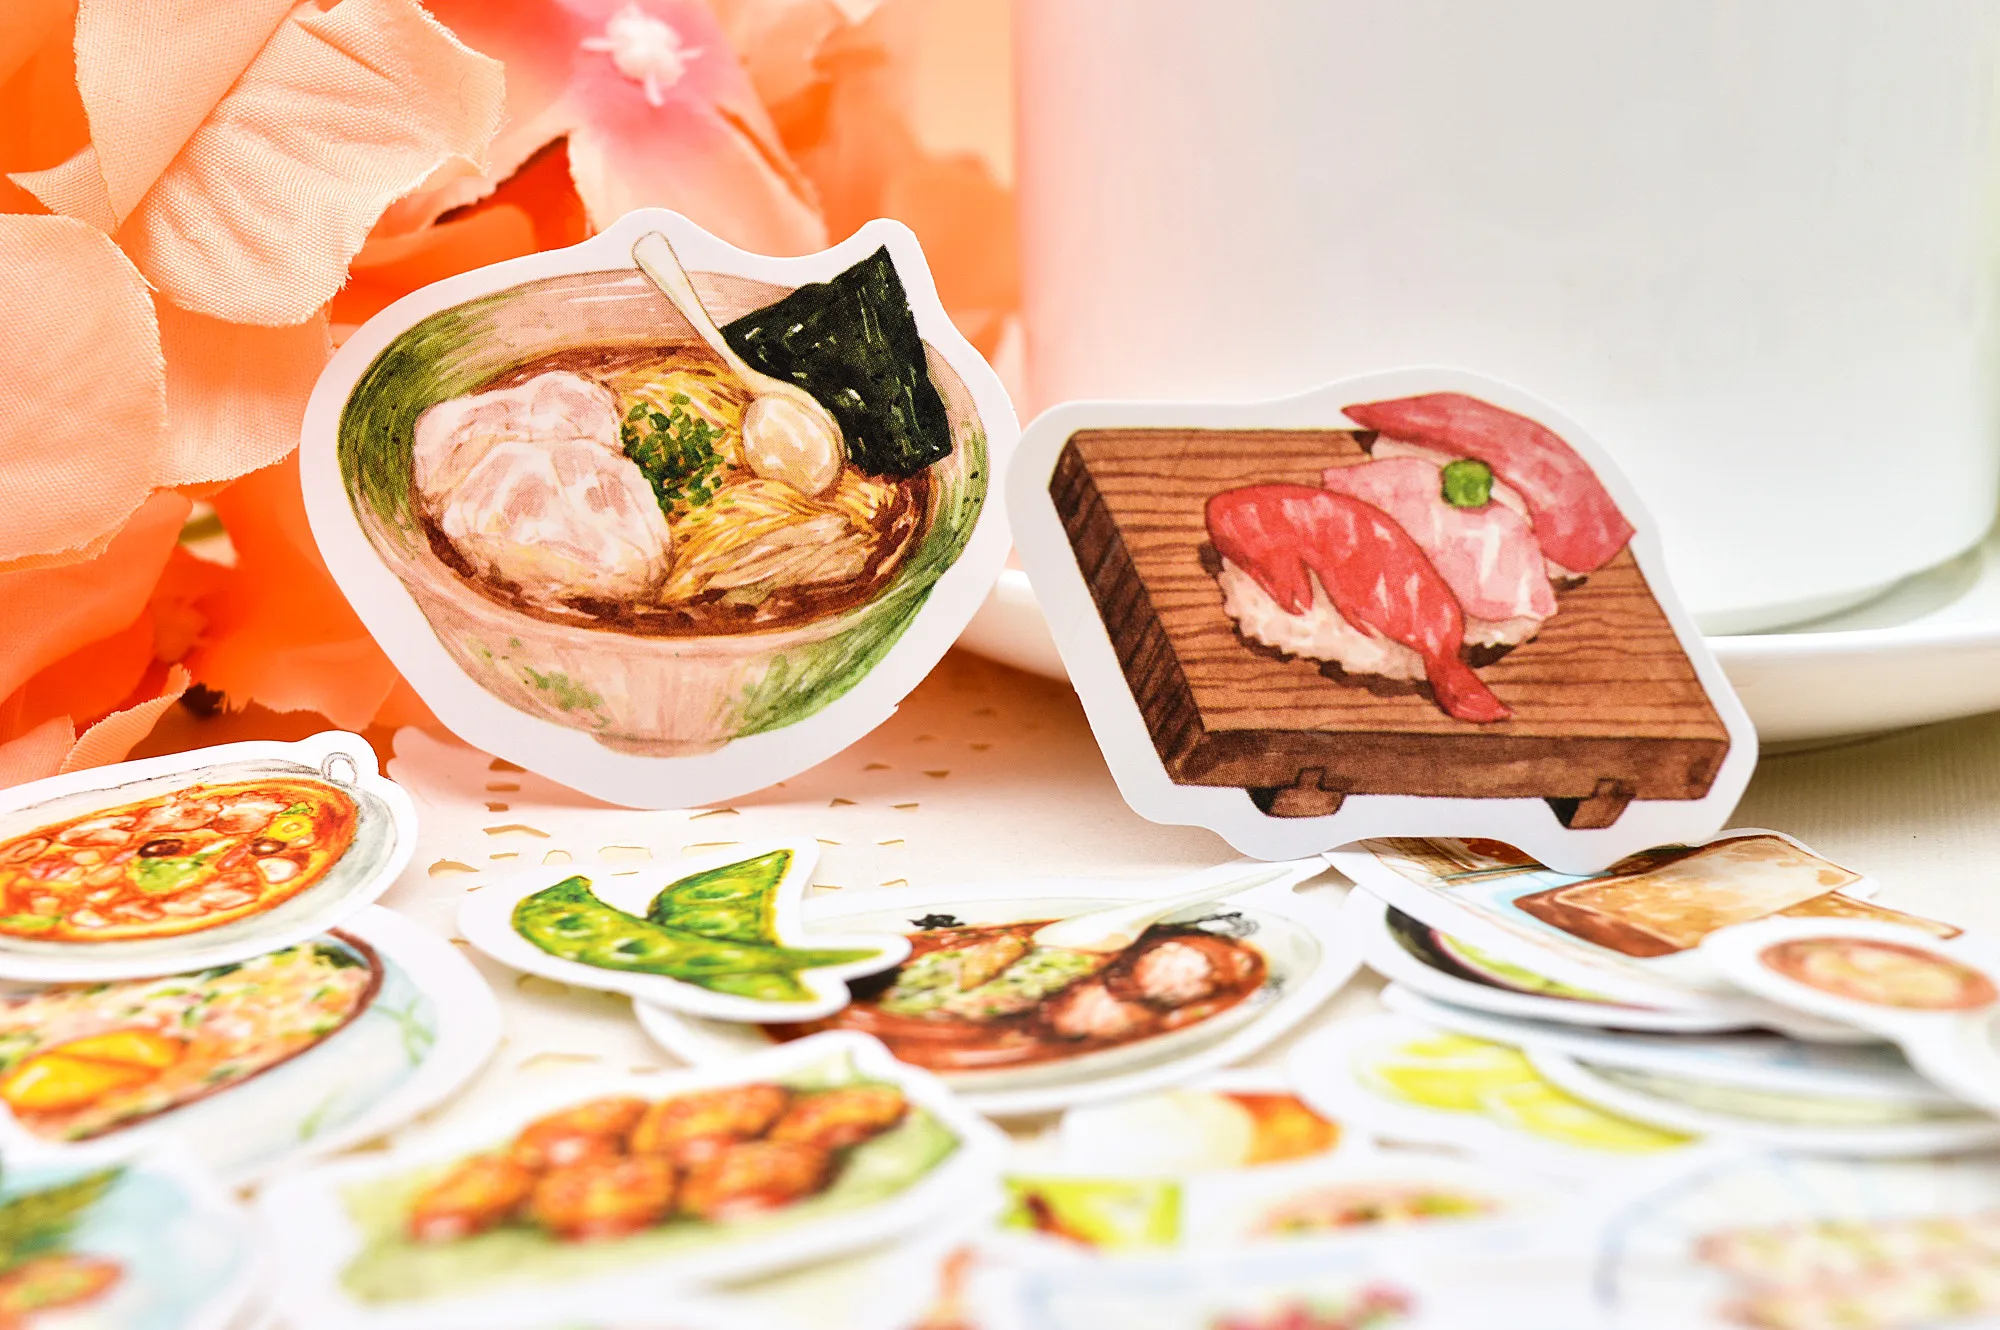 43 шт. DIY ручная книга дорожный альбом для декоративных наклеек японская наклейка для пищевых продуктов дневник TN стикер водонепроницаемая бумага